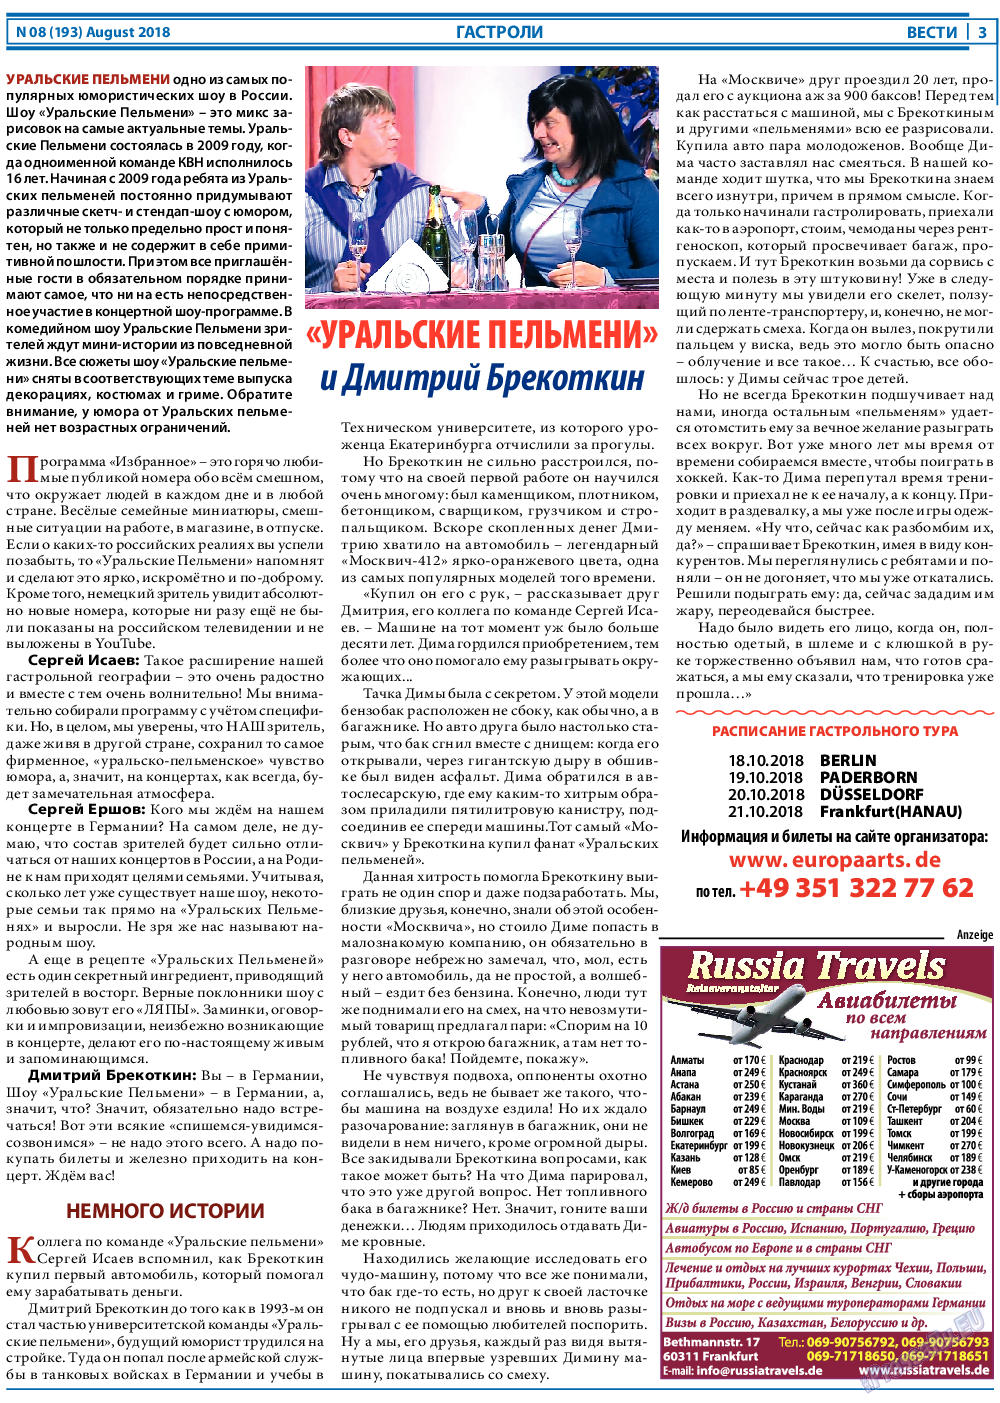 Вести, газета. 2018 №8 стр.3